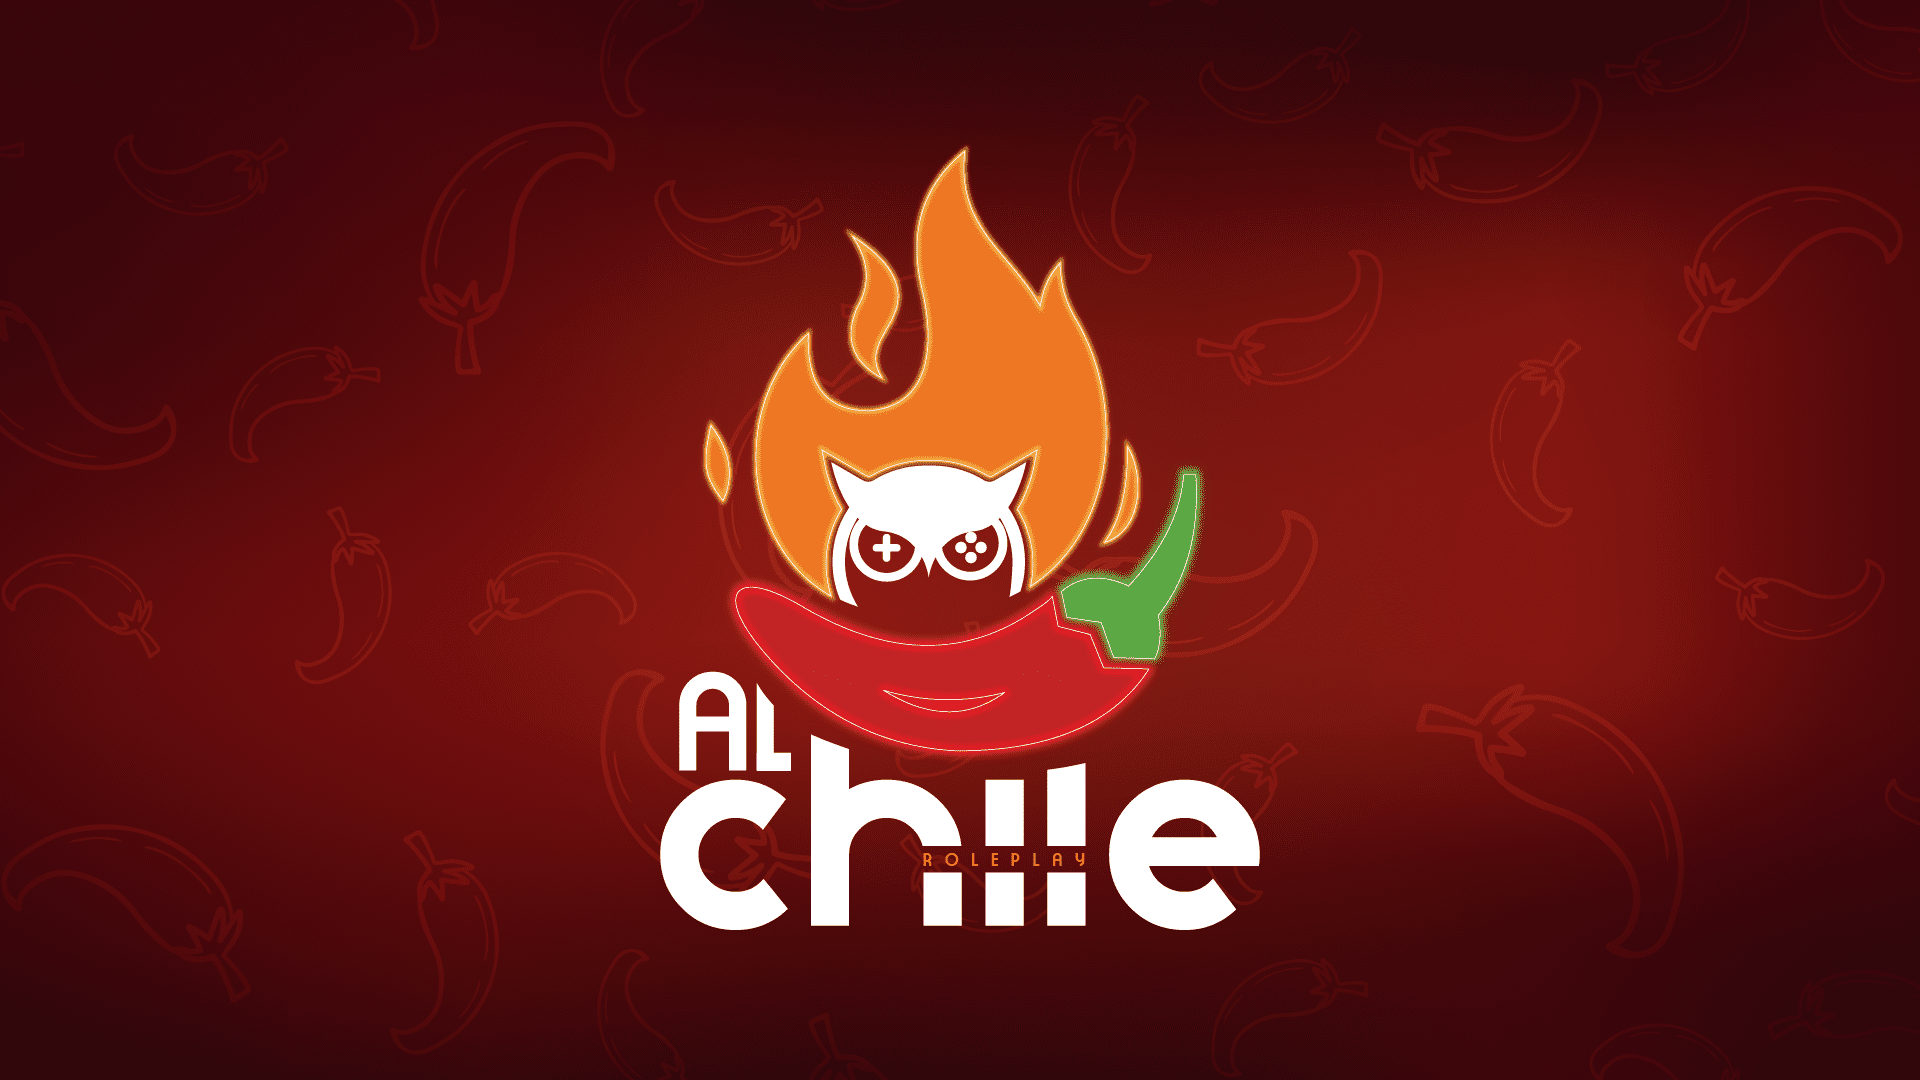 Al Chile RP